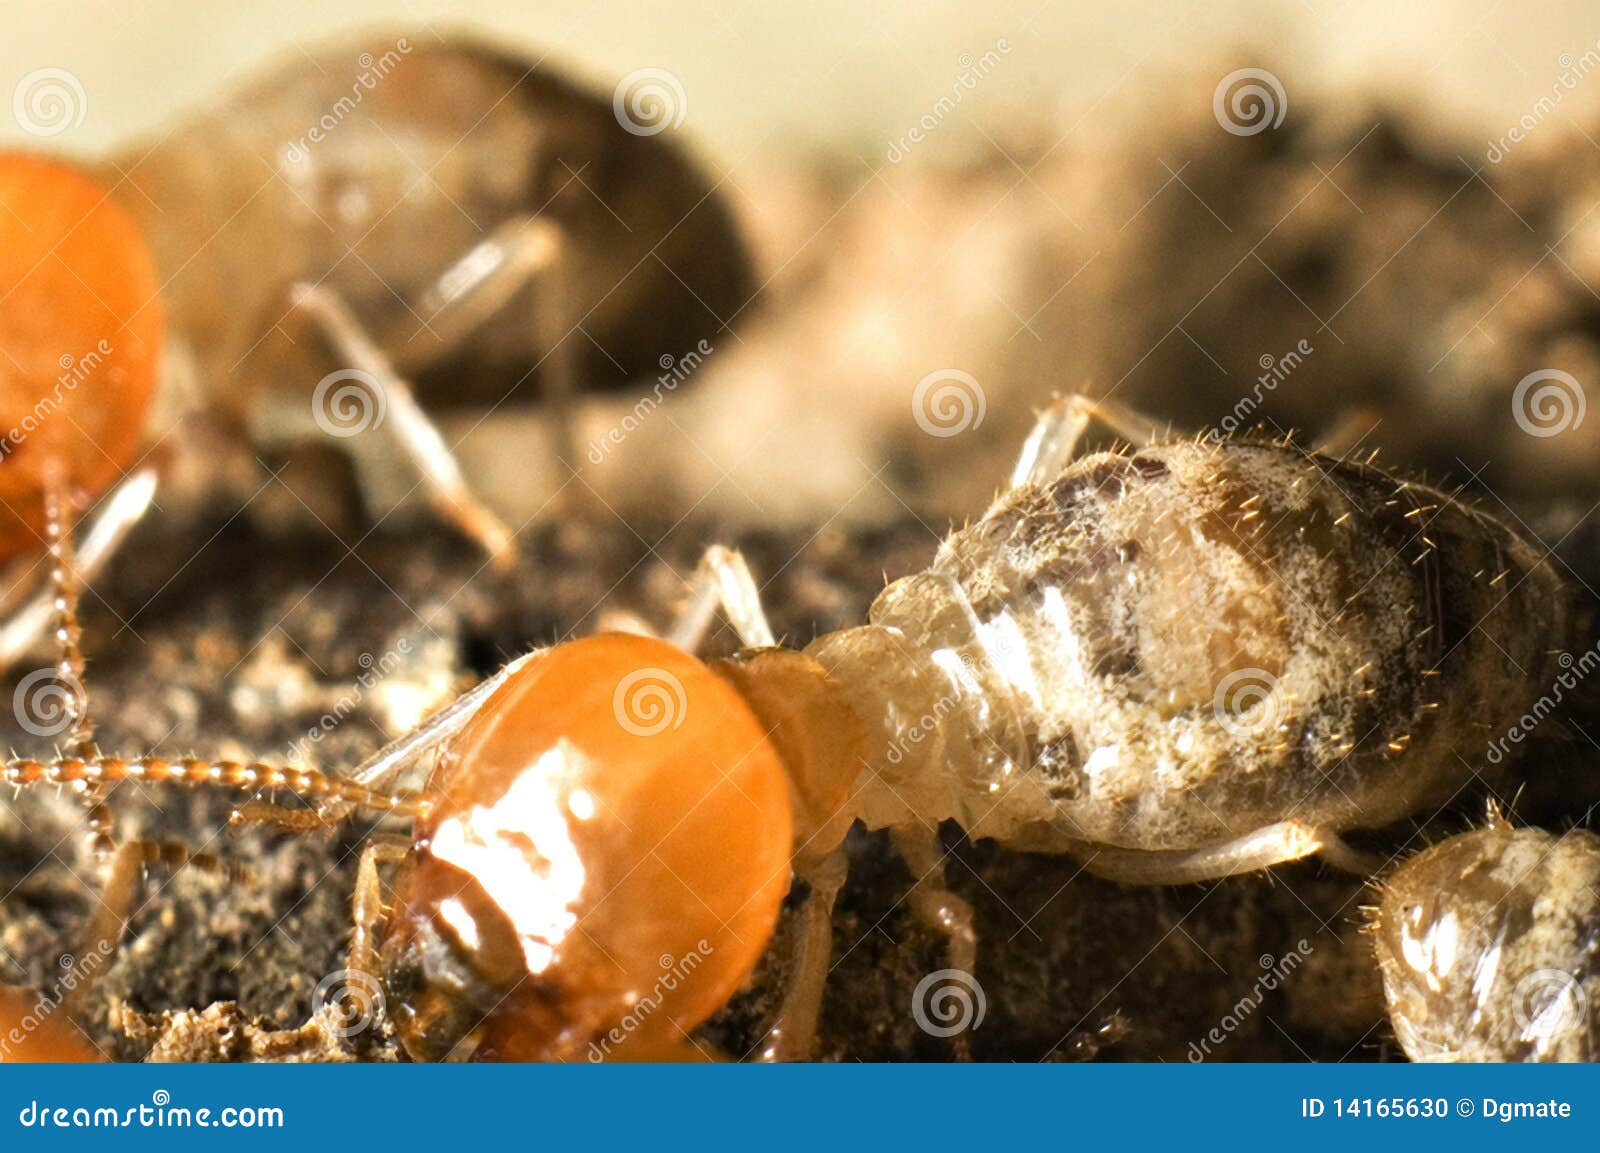 termite macro shot